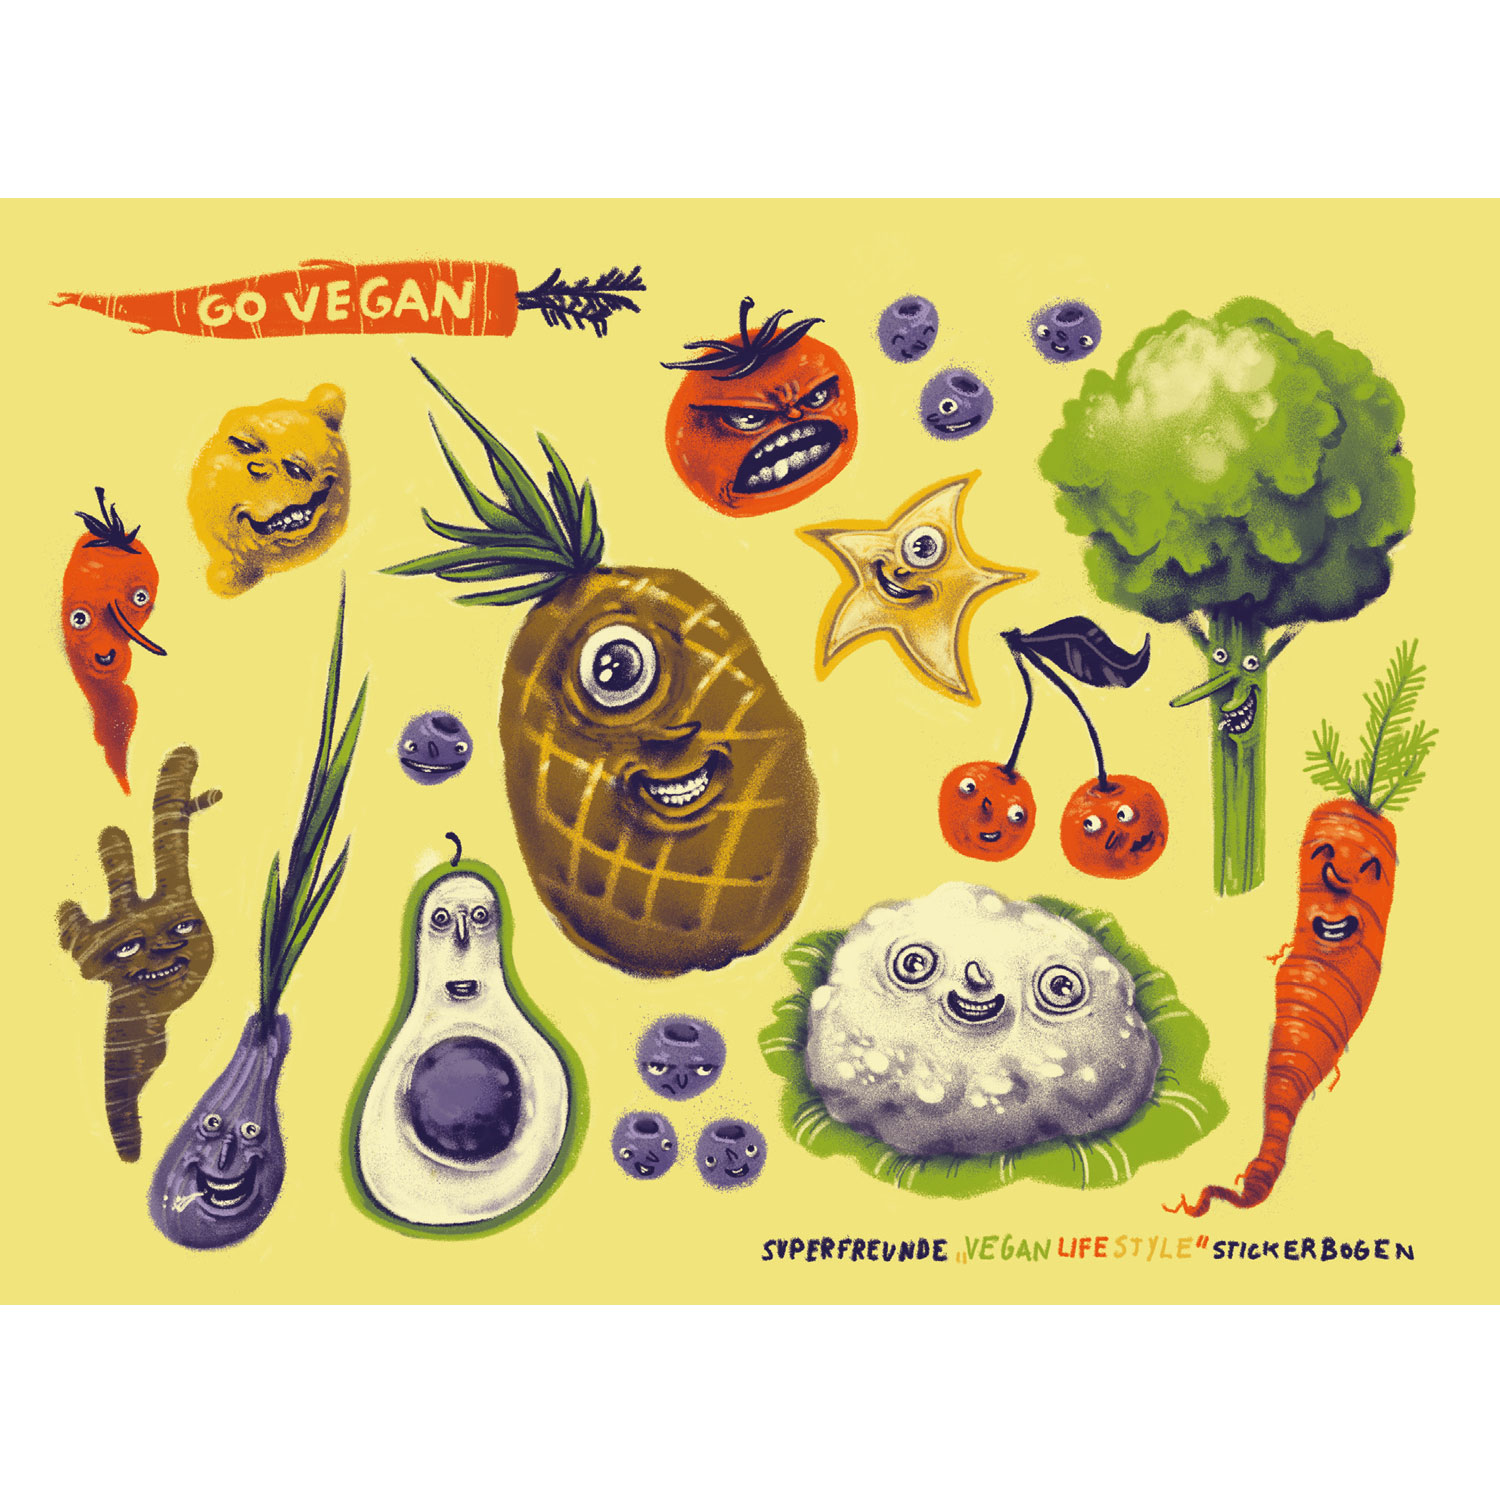 Vegan Lifestyle, Stickerbogen